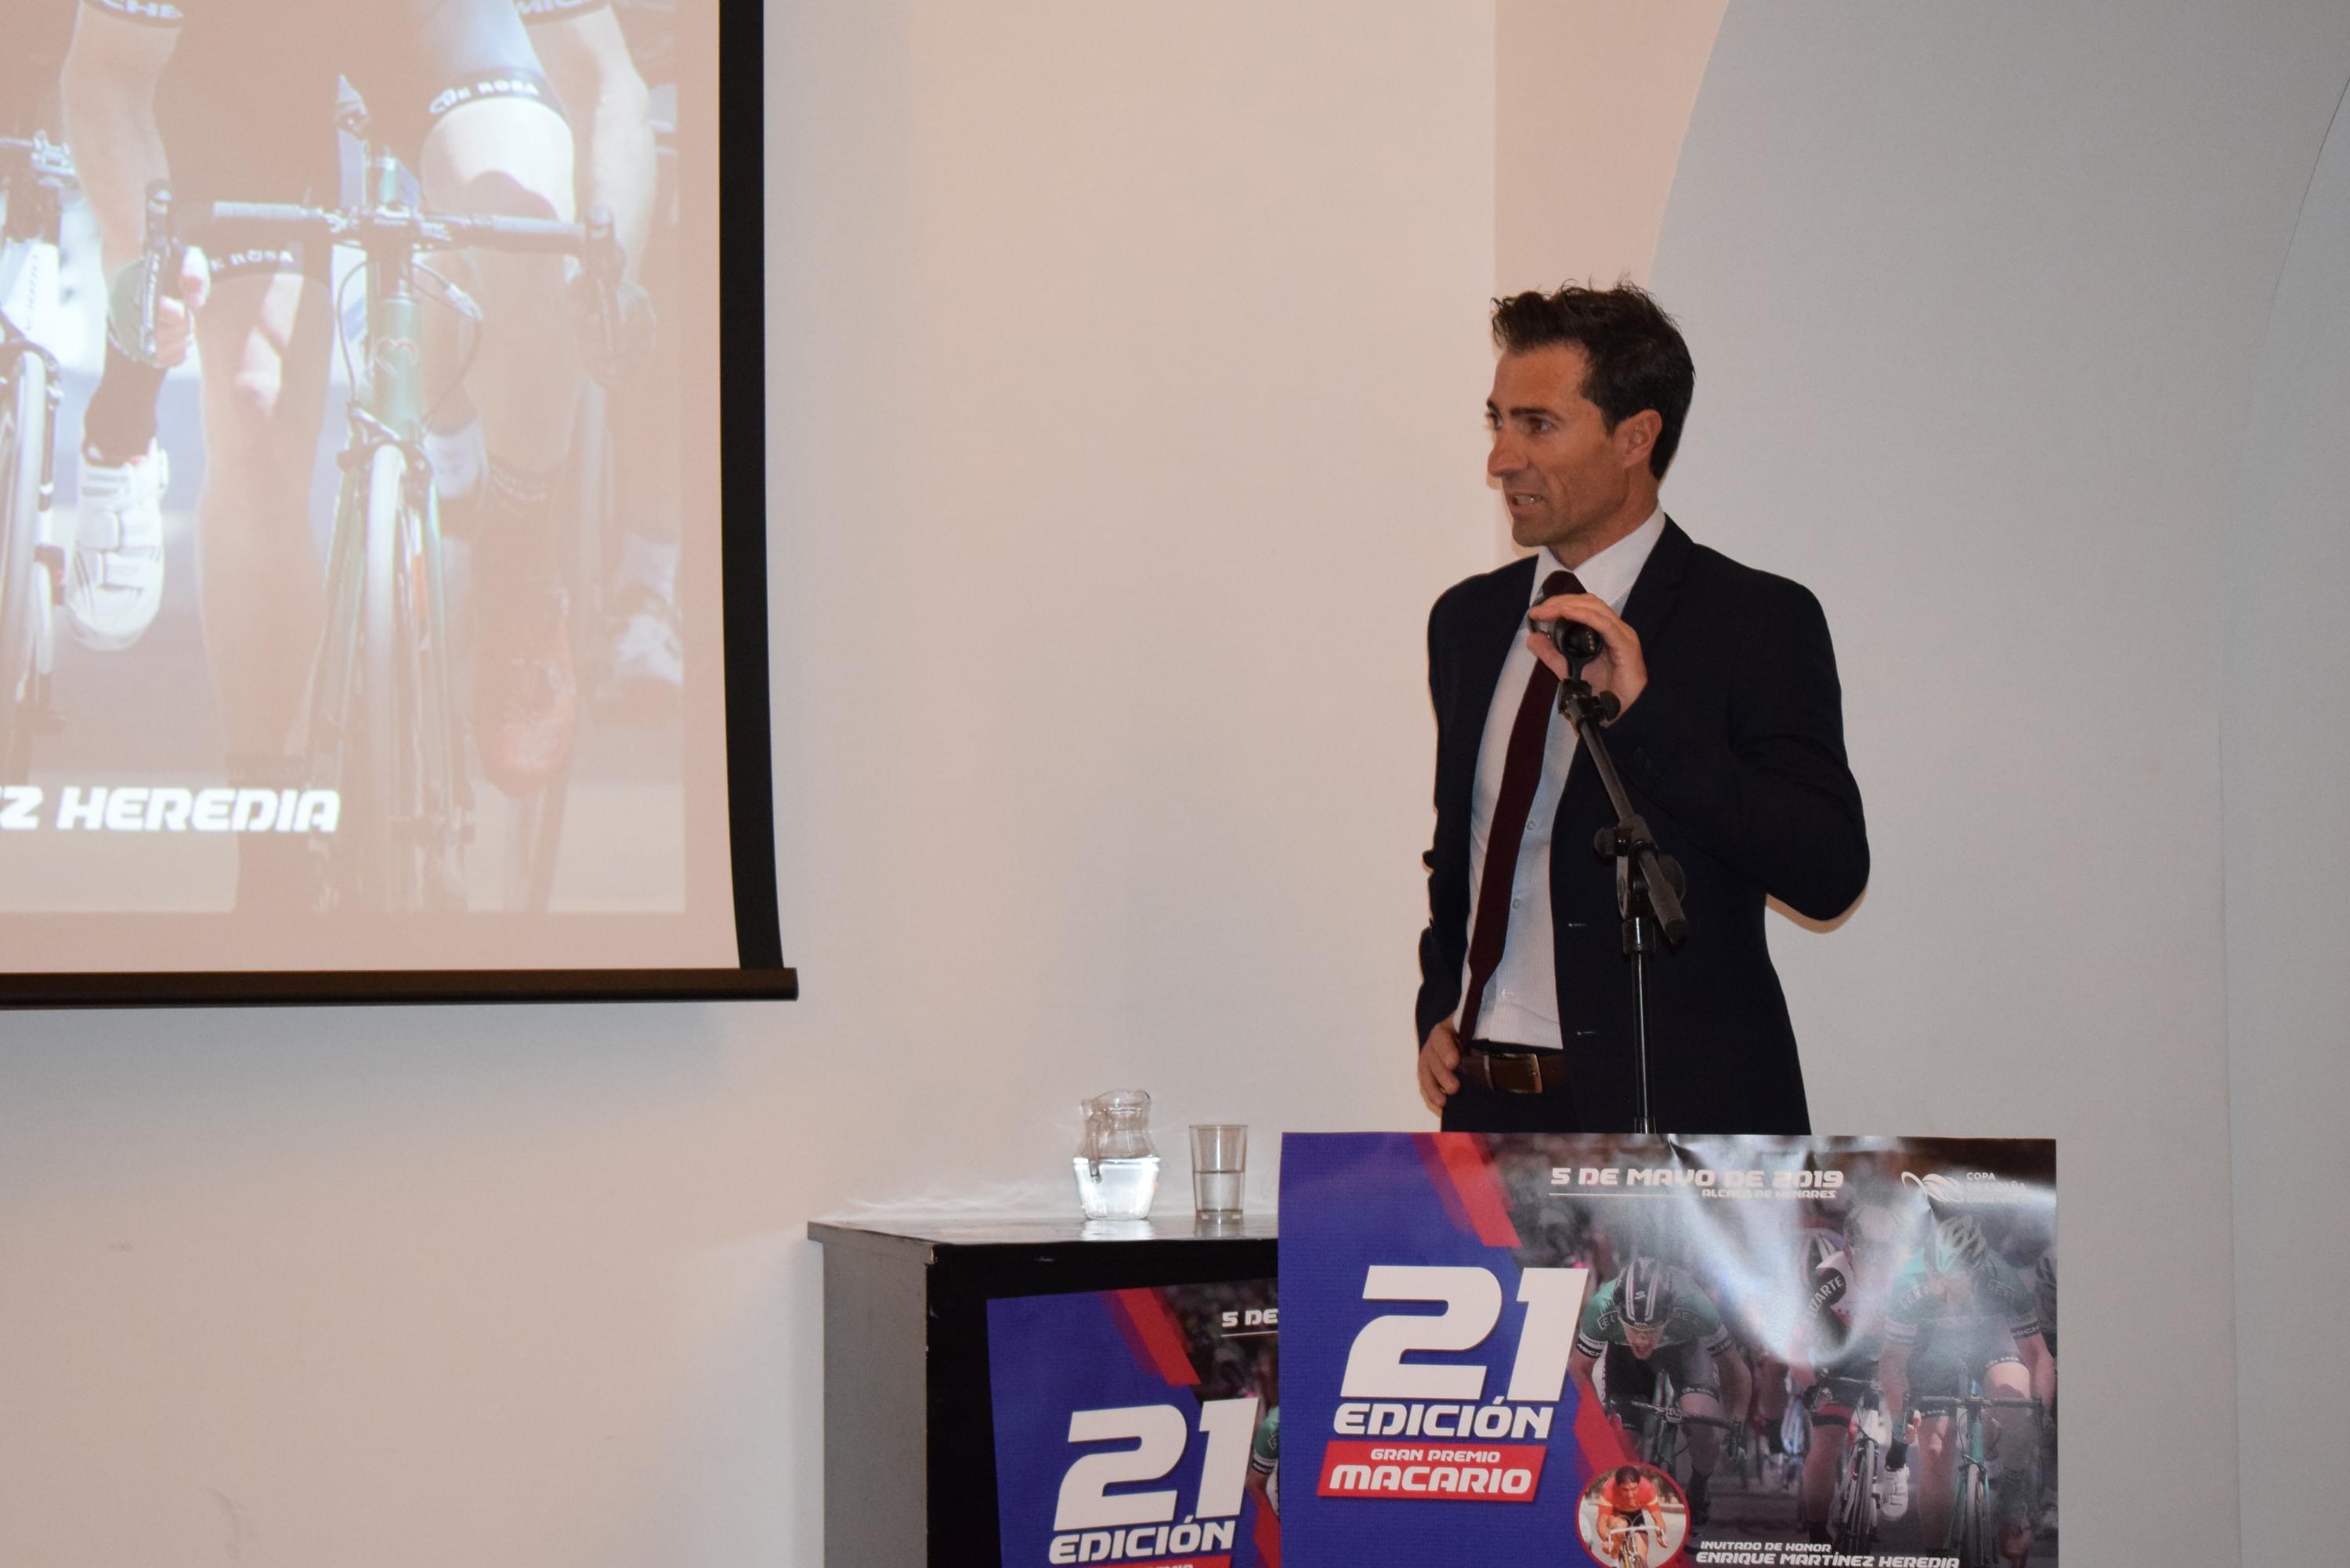 Presentado el XXI Gran Premio Macario en Alcalá de Henares